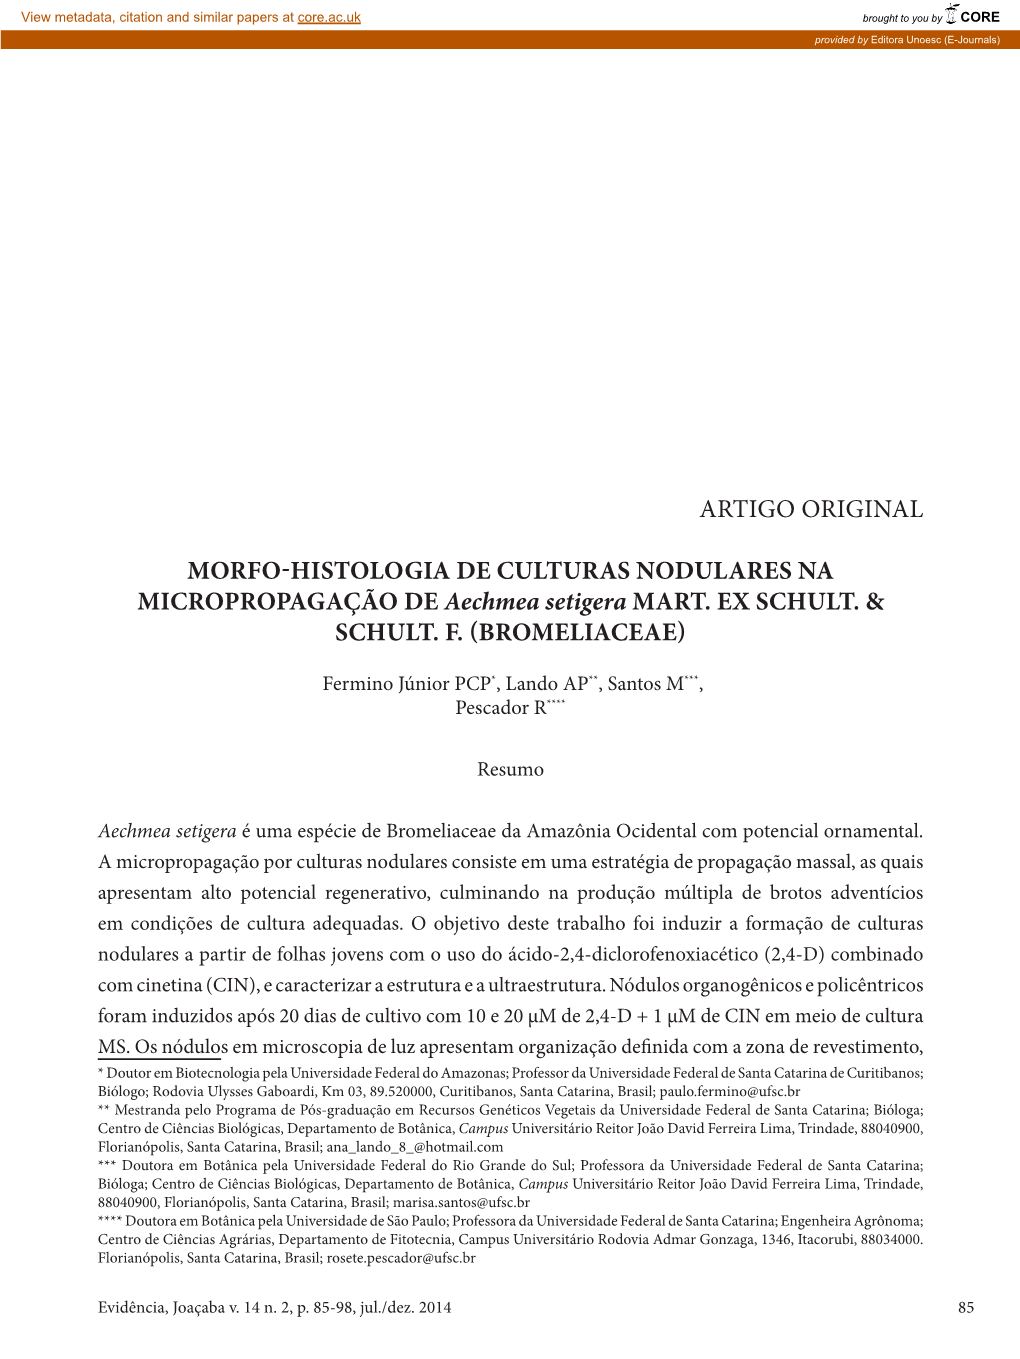 Artigo Original Morfo-Histologia De